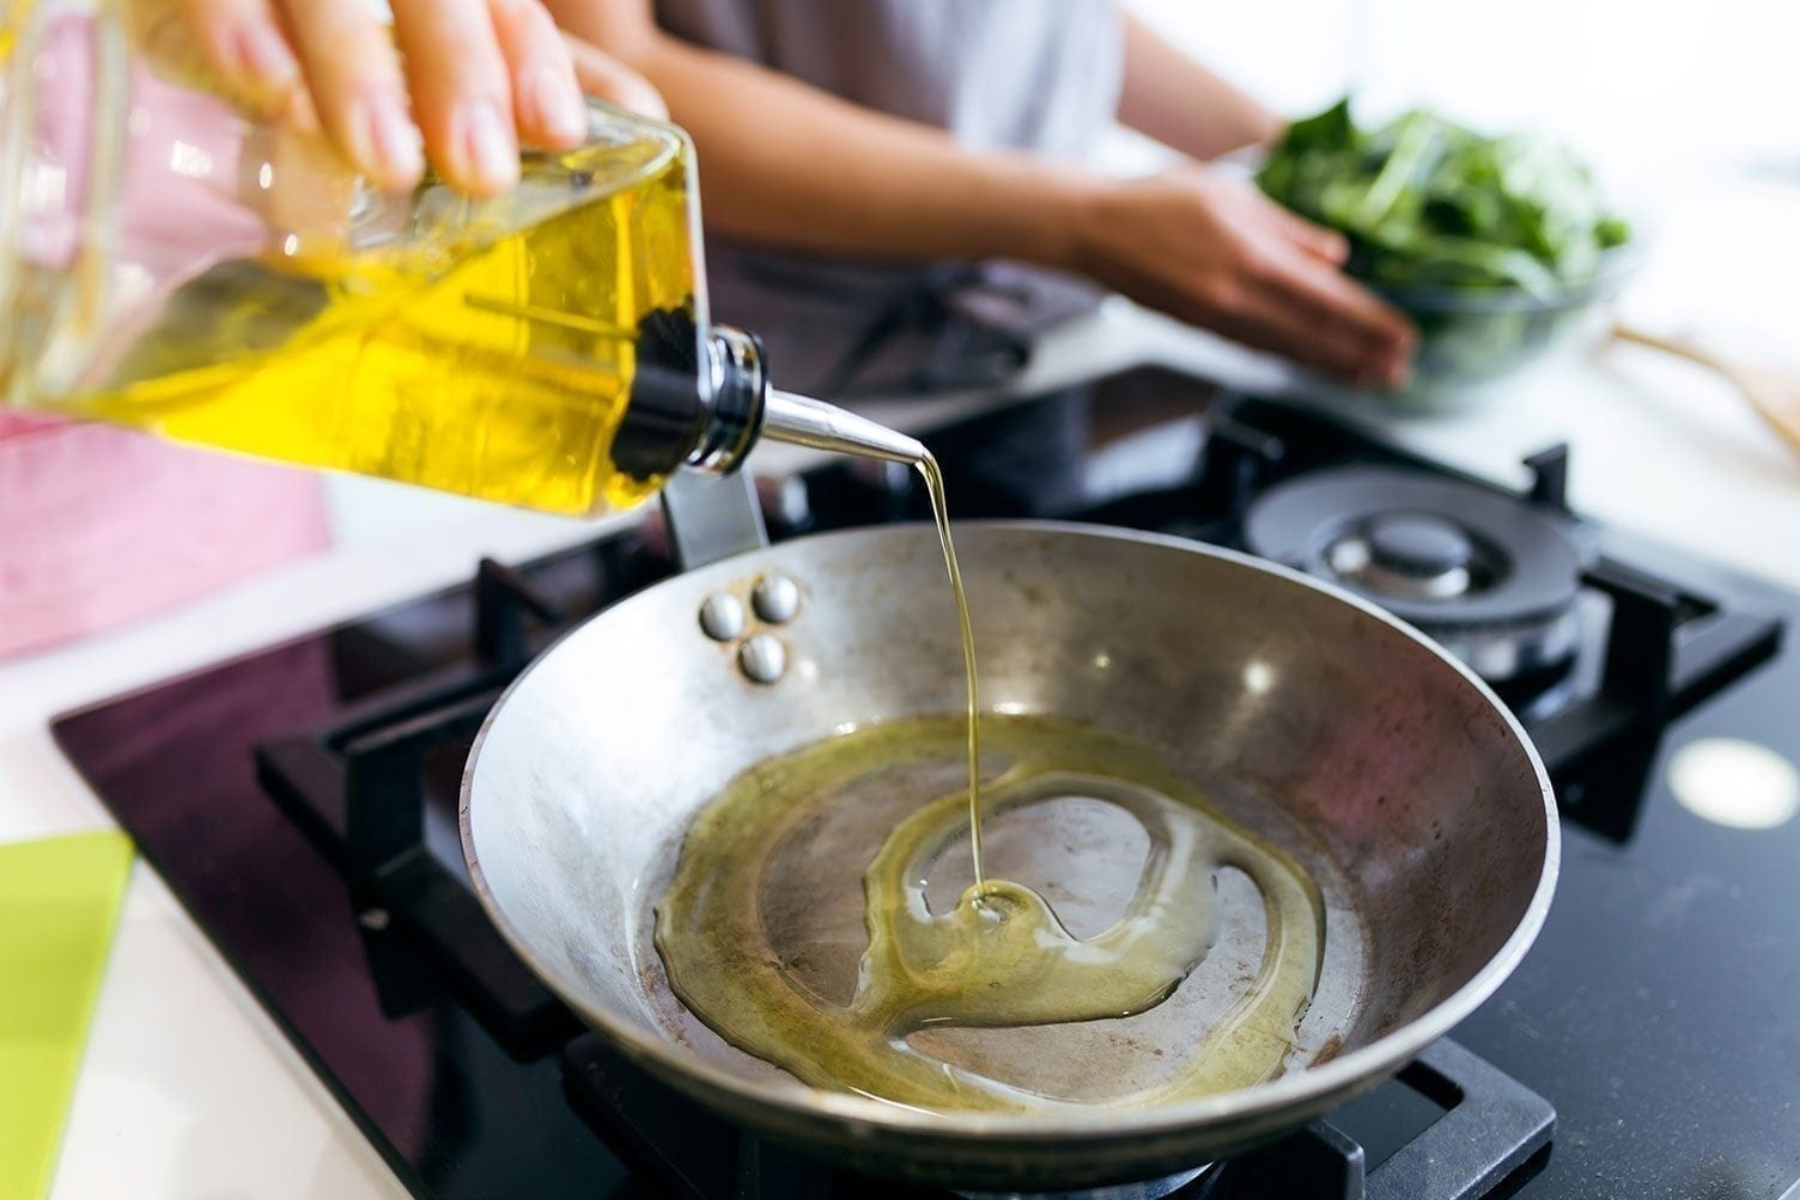 Λάδι μαγειρέματος: Ποιο είναι το καλύτερο λάδι για να προσθέσετε στη μαγειρική σας;